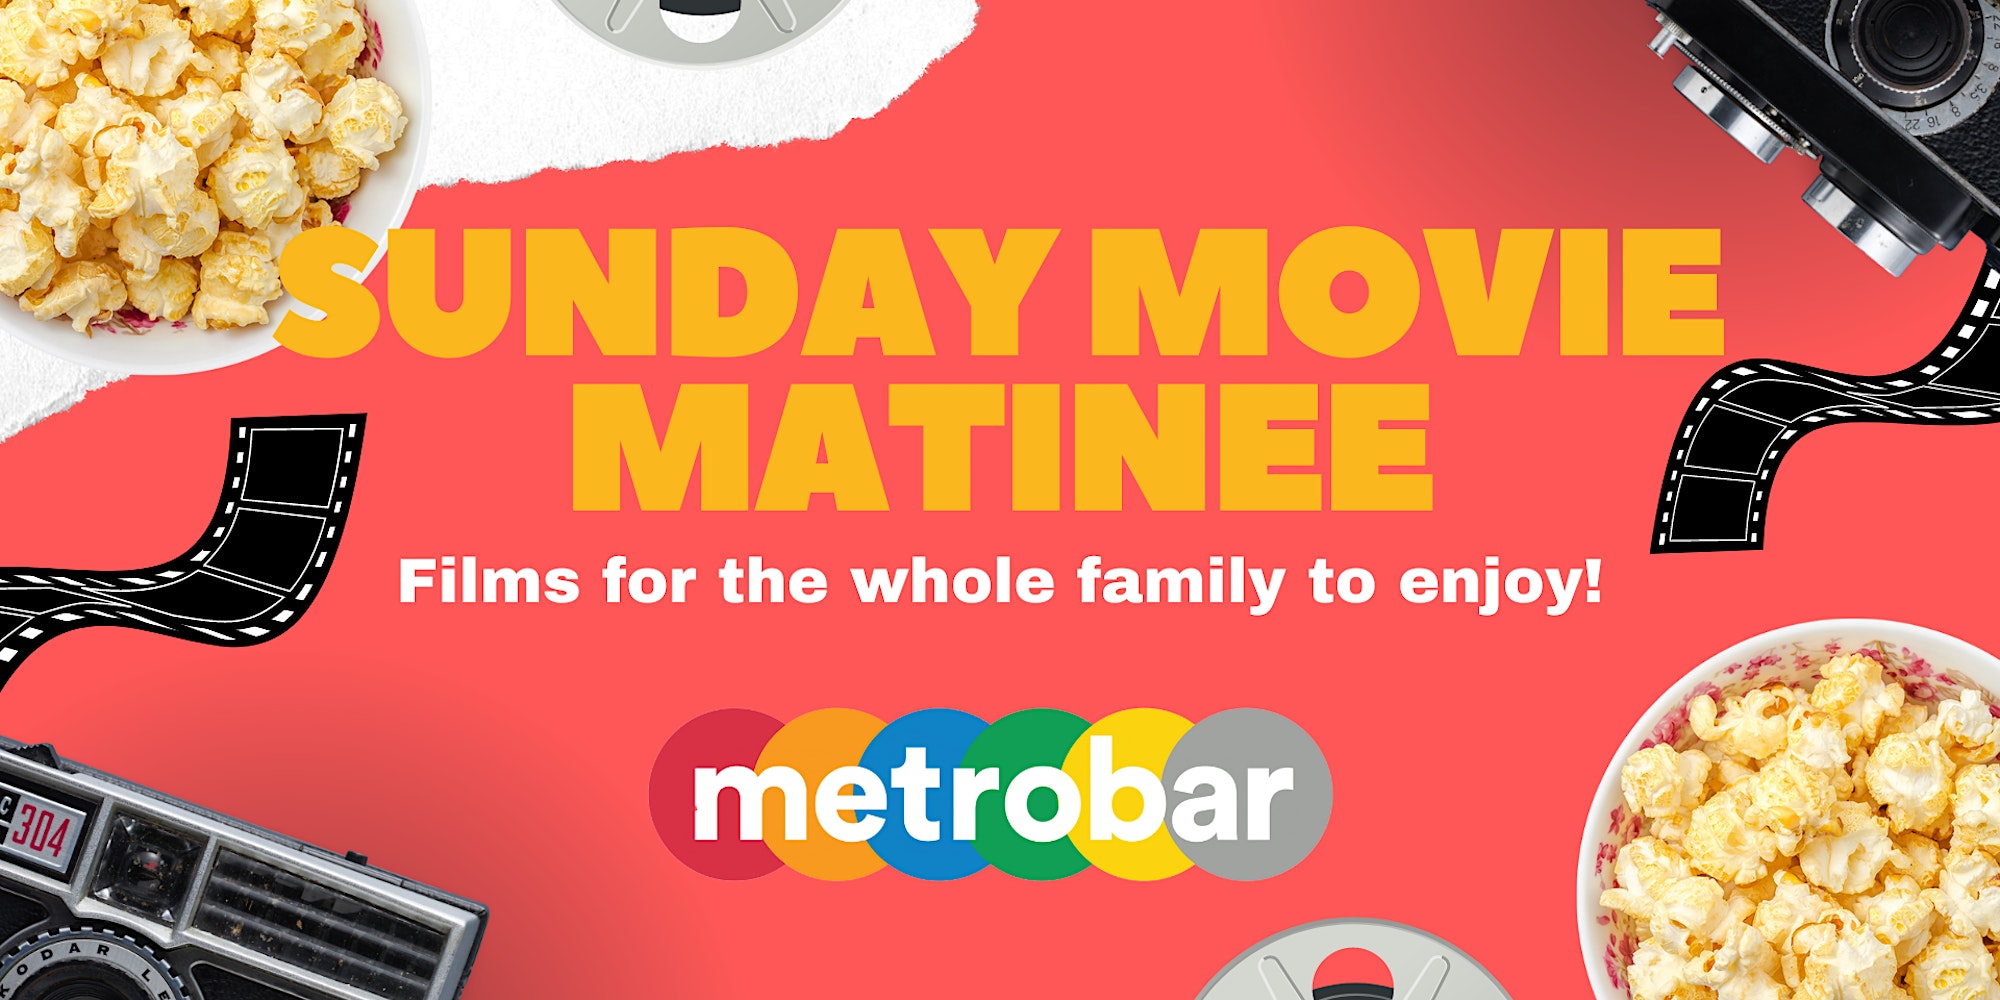 Movies @ metrobar